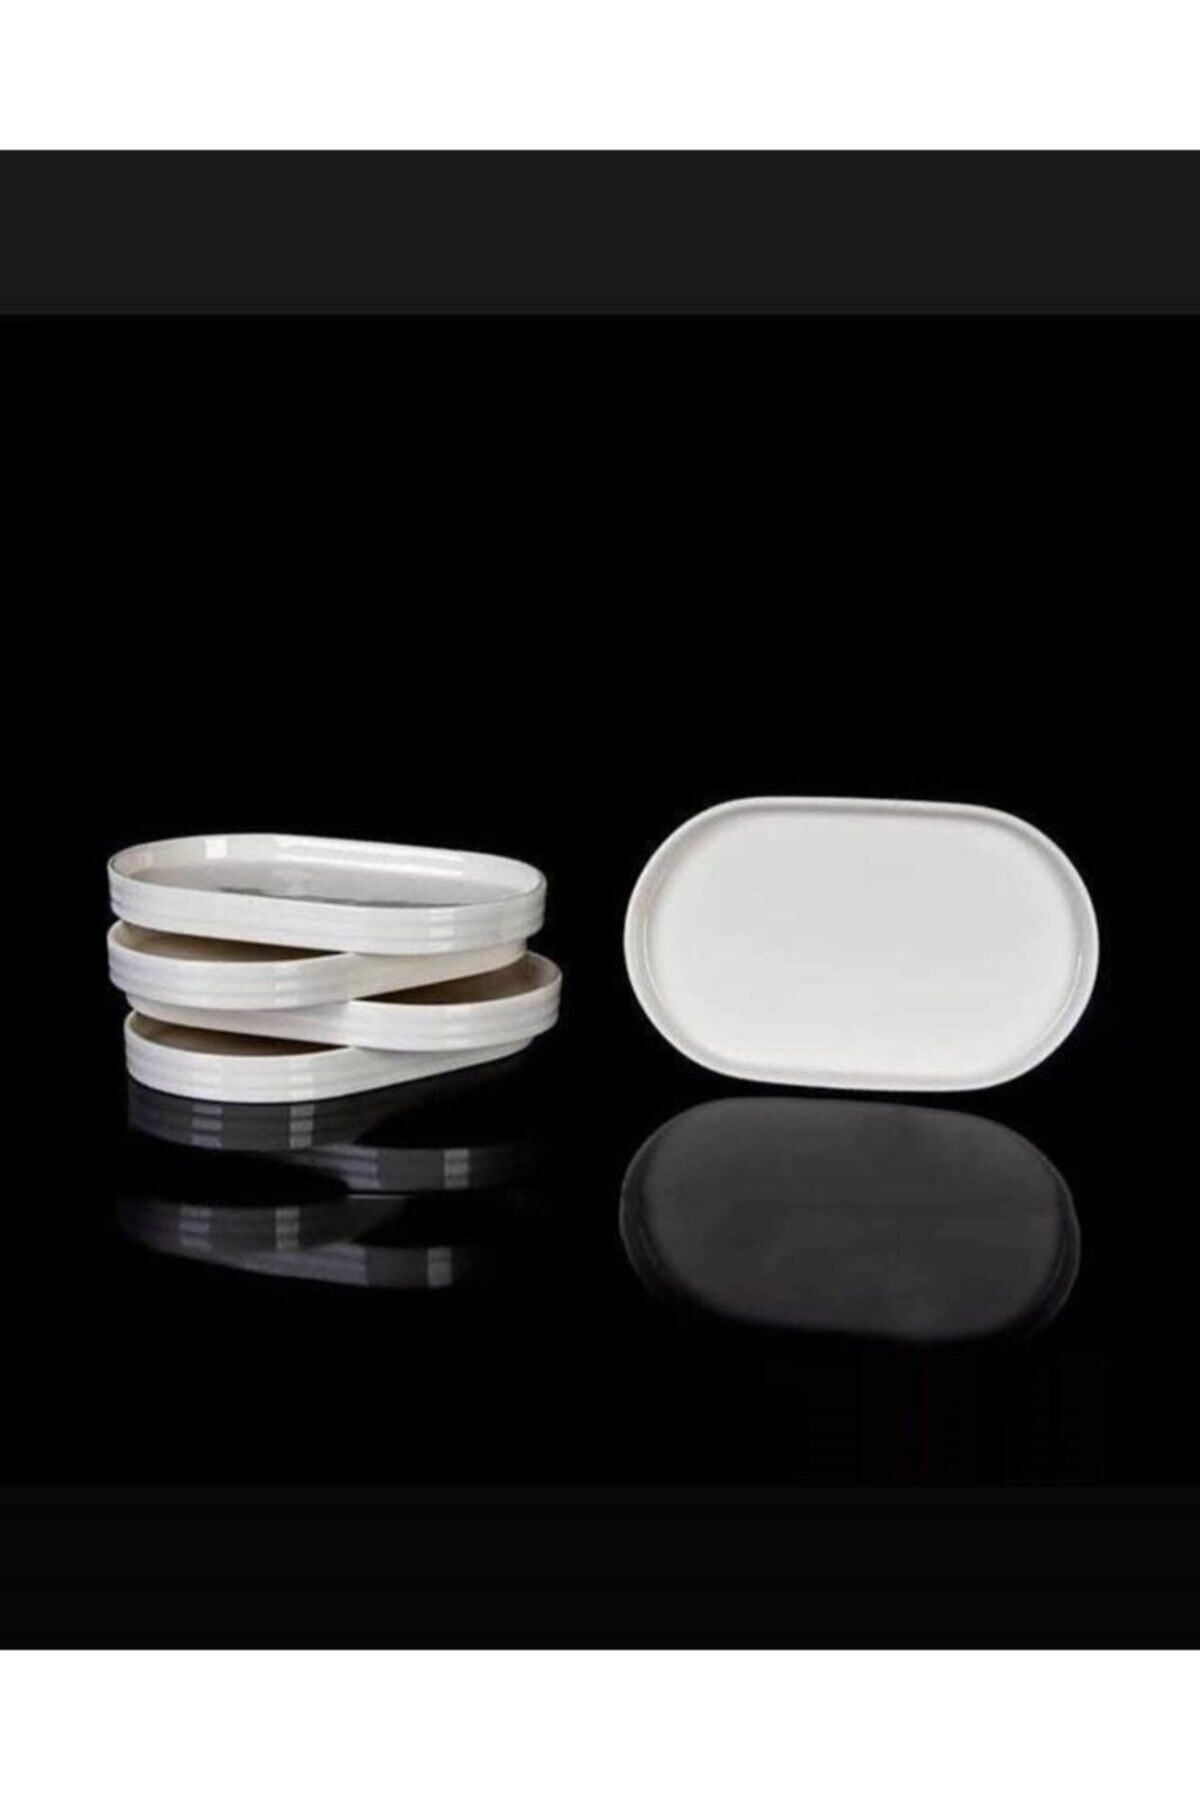 AROW Pure 6 Adet Porselen Oval Çerezlik Sunumluk Tabak 15 X 10 Cm